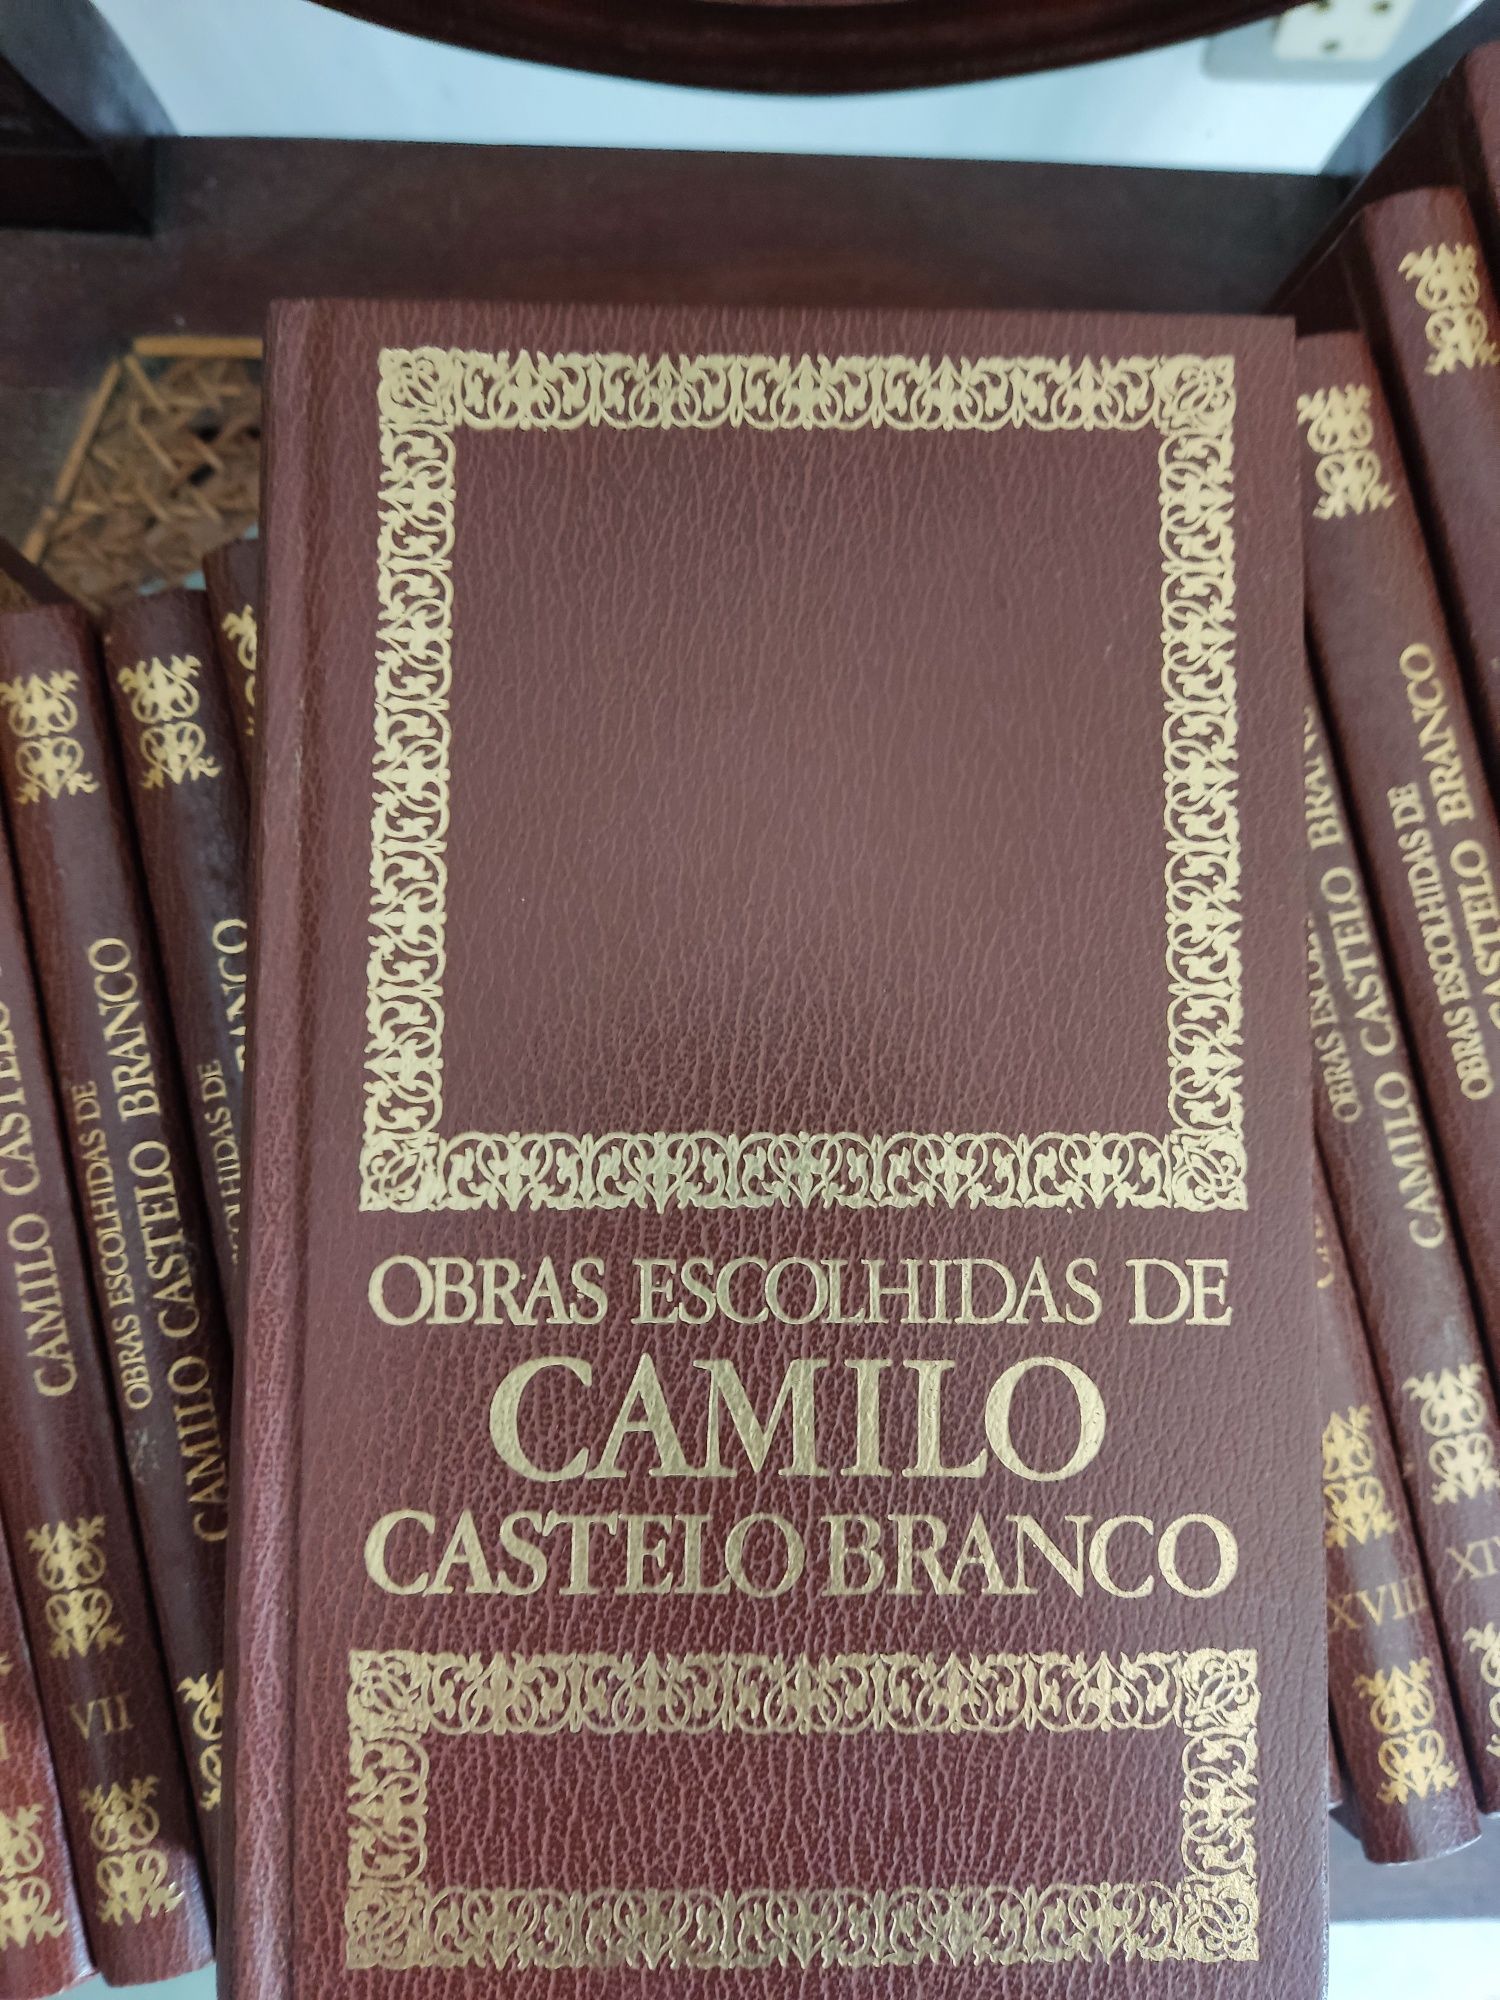 Obras completas de Camilo Castelo Branco